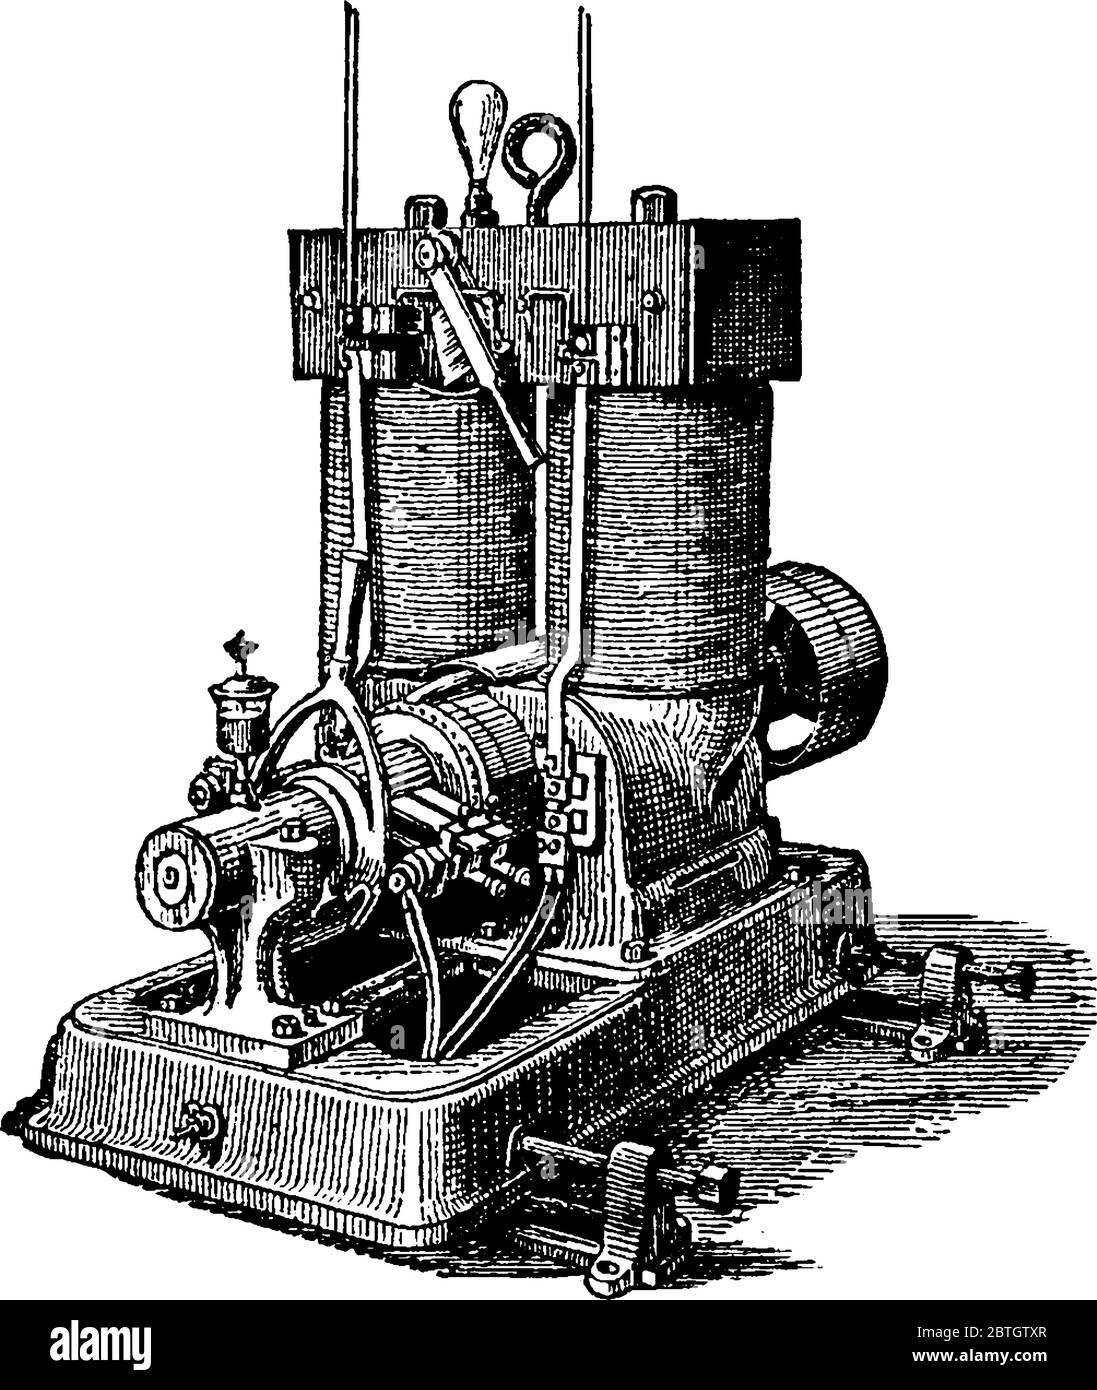 Thomas Edison a conçu le concept original de la machine électrique, un générateur d'électricité distribué aux maisons, aux entreprises et aux usines, ligne d'époque drawi Illustration de Vecteur